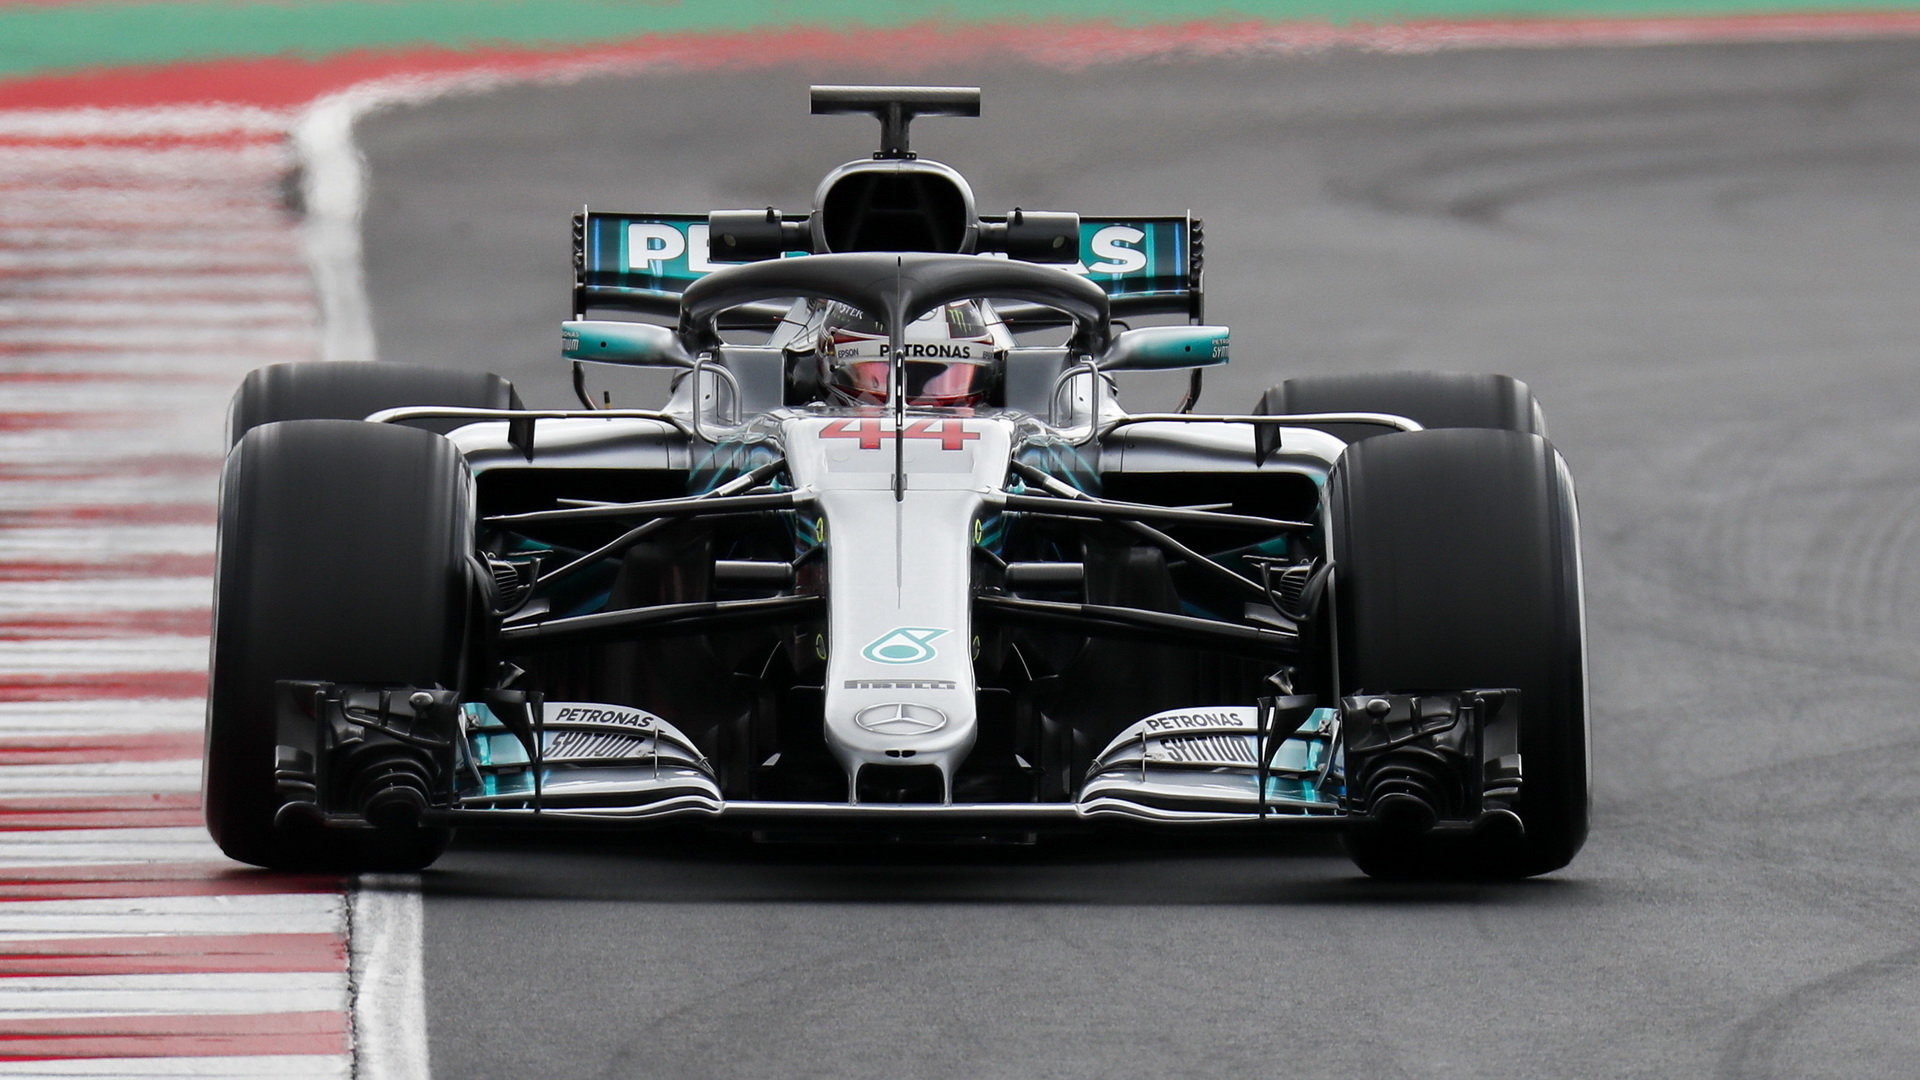 Lewis Hamilton si testovací jízdy v Barceloně díky novému povrchu trati moc neužil